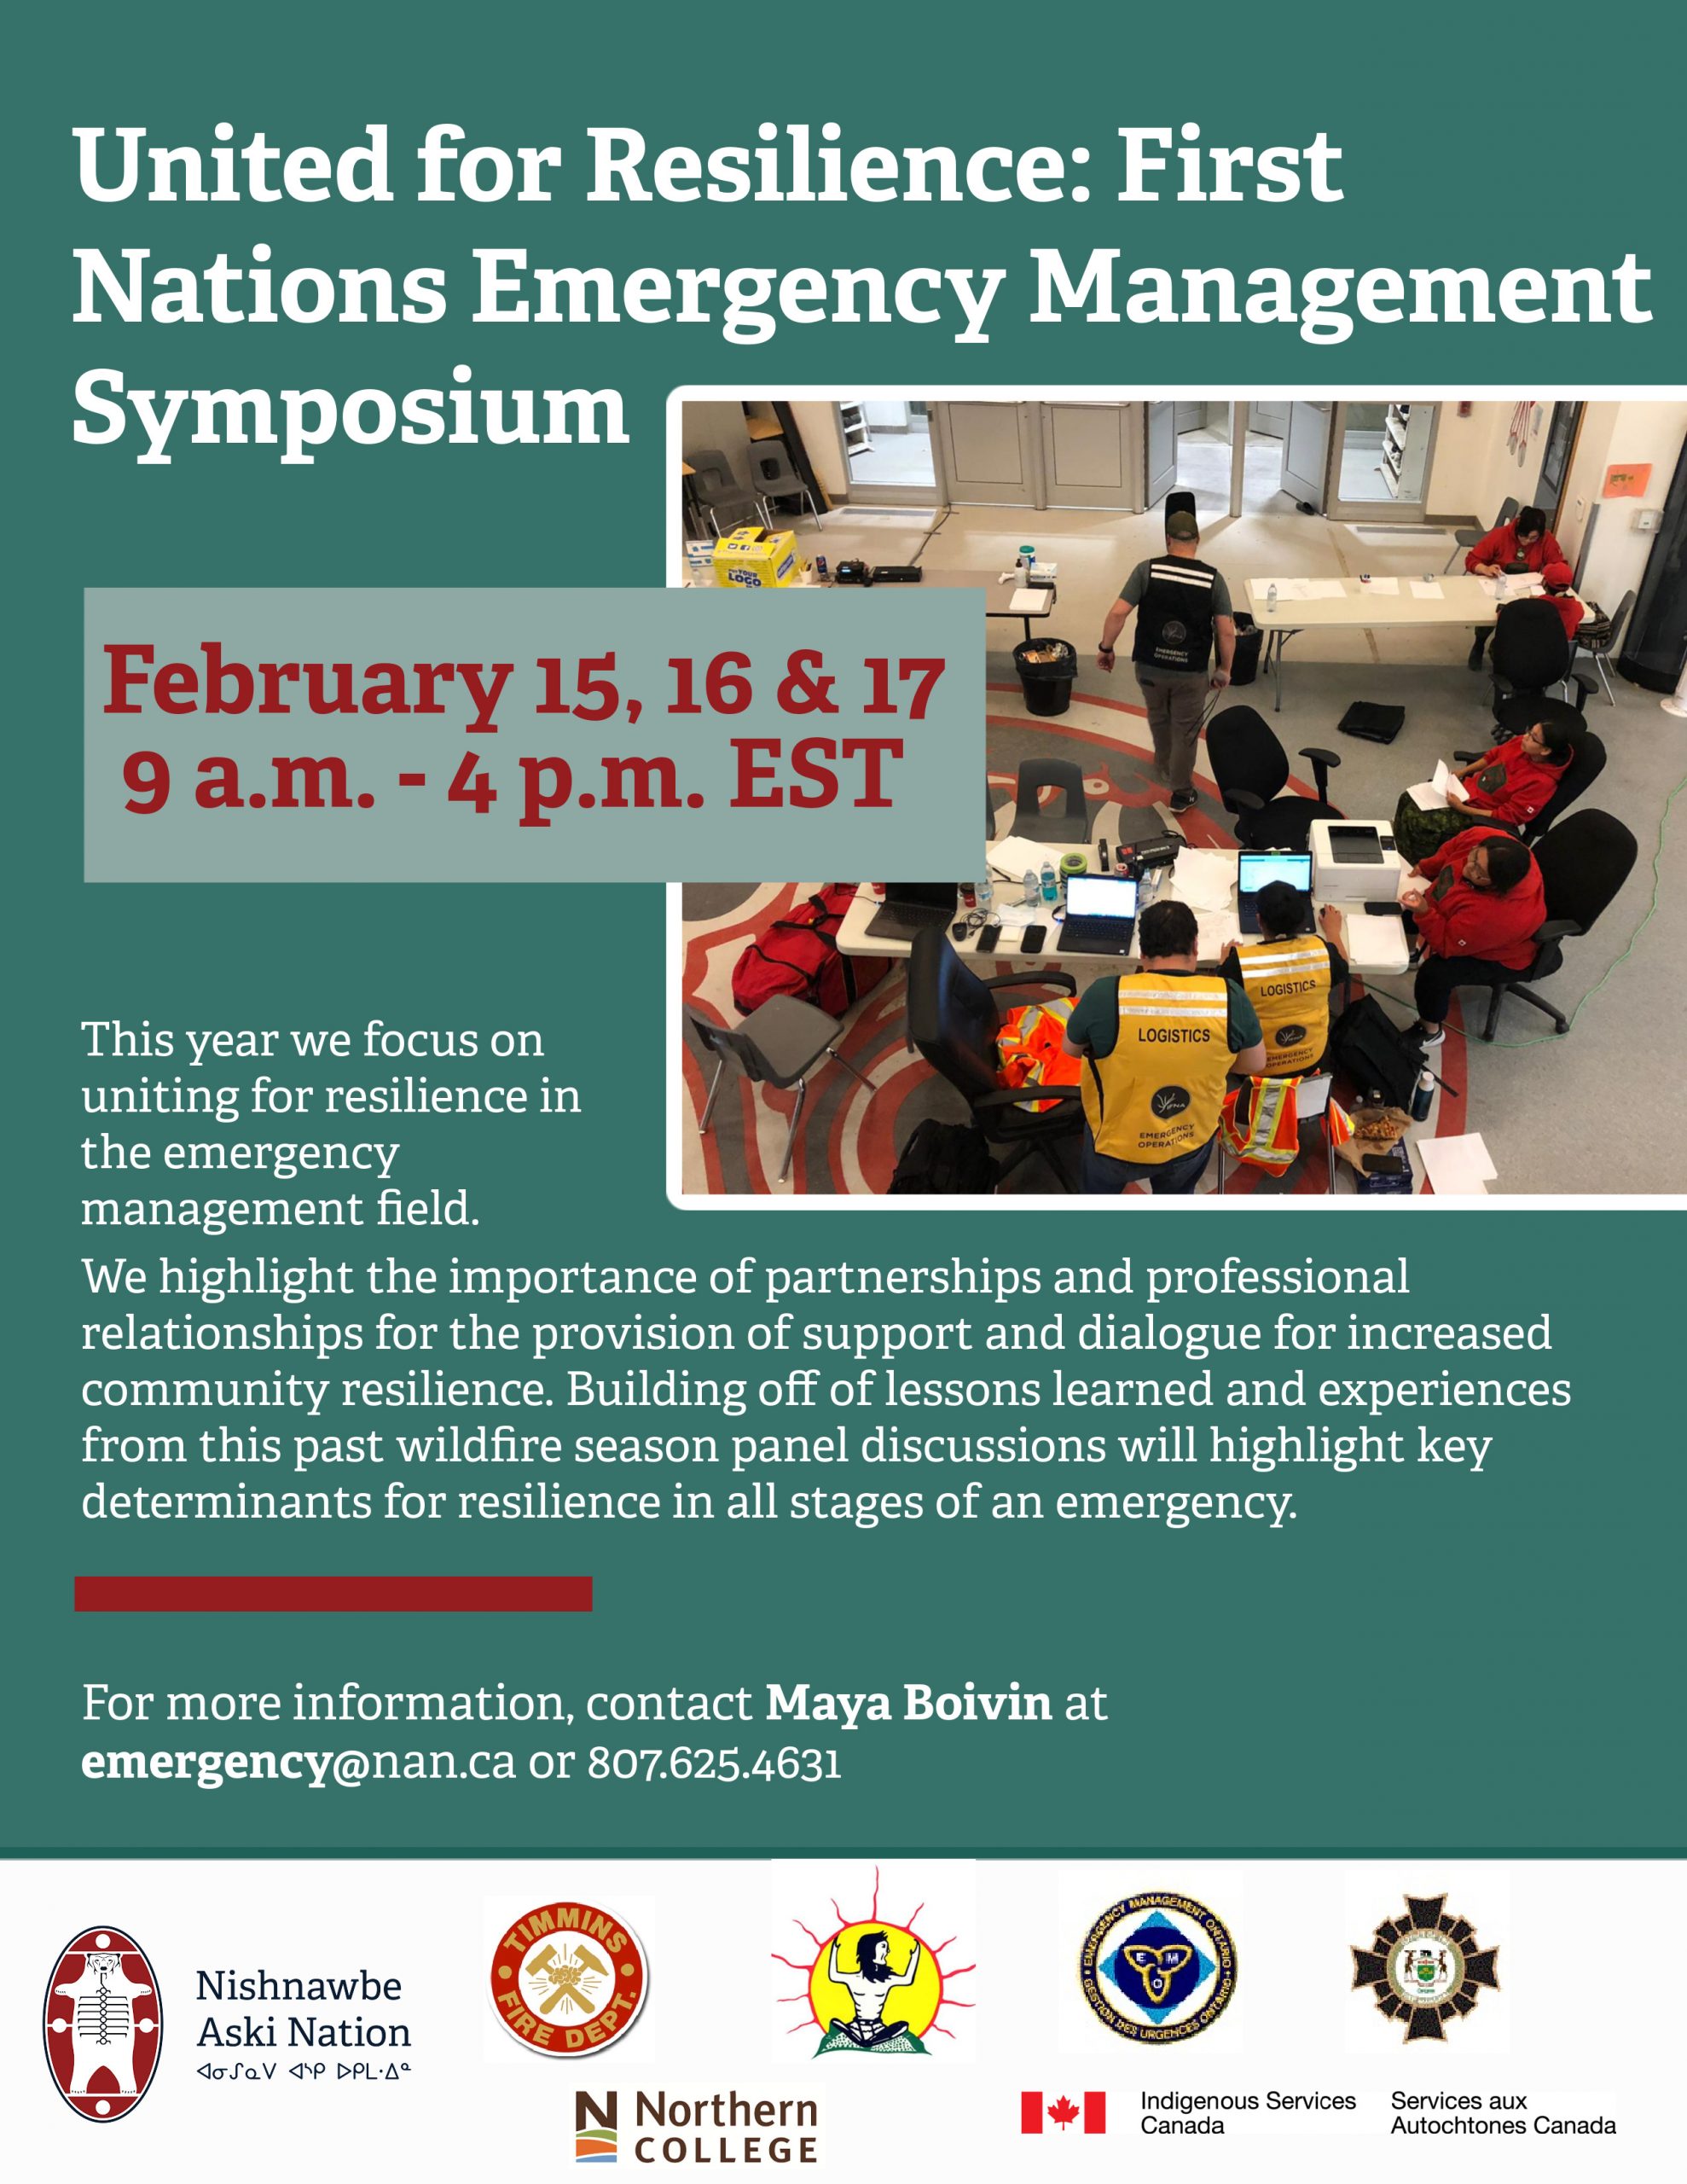 First Nations Emergency Management Symposium Nishnawbe Aski Nation